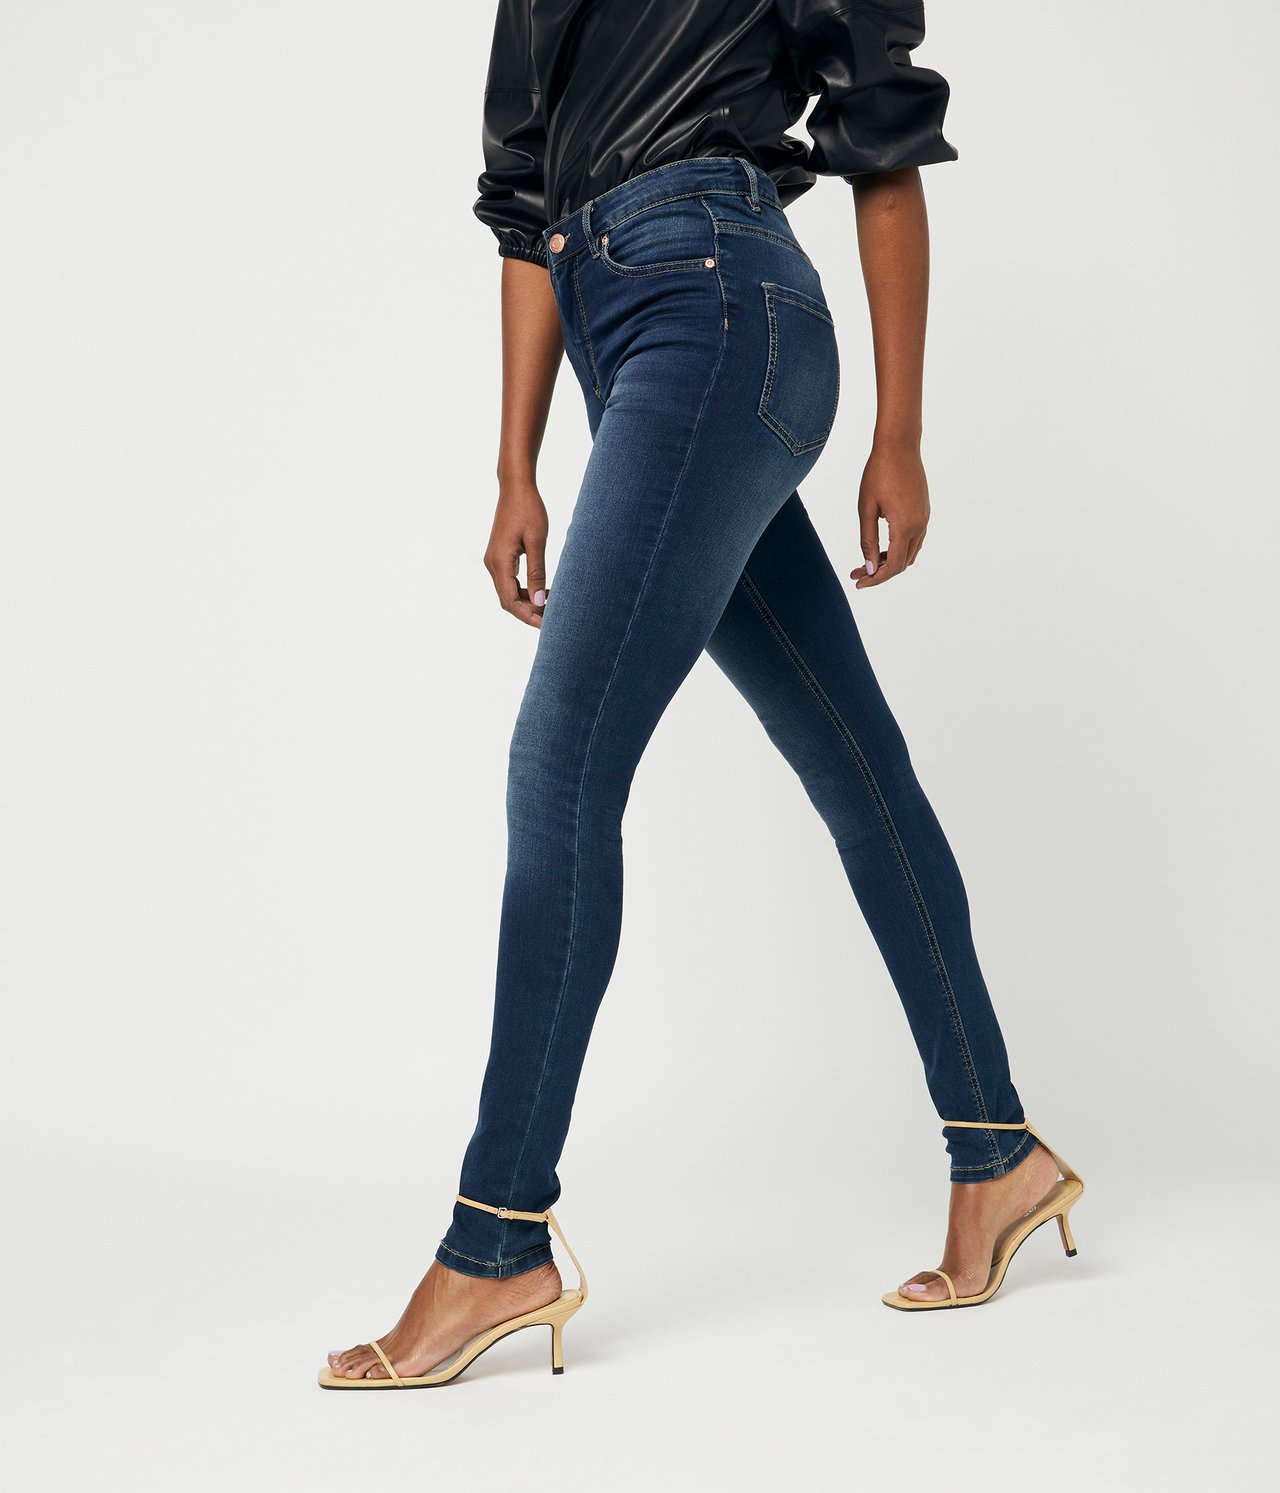 Super slim jeans extra long leg - Tumma denimi - 3